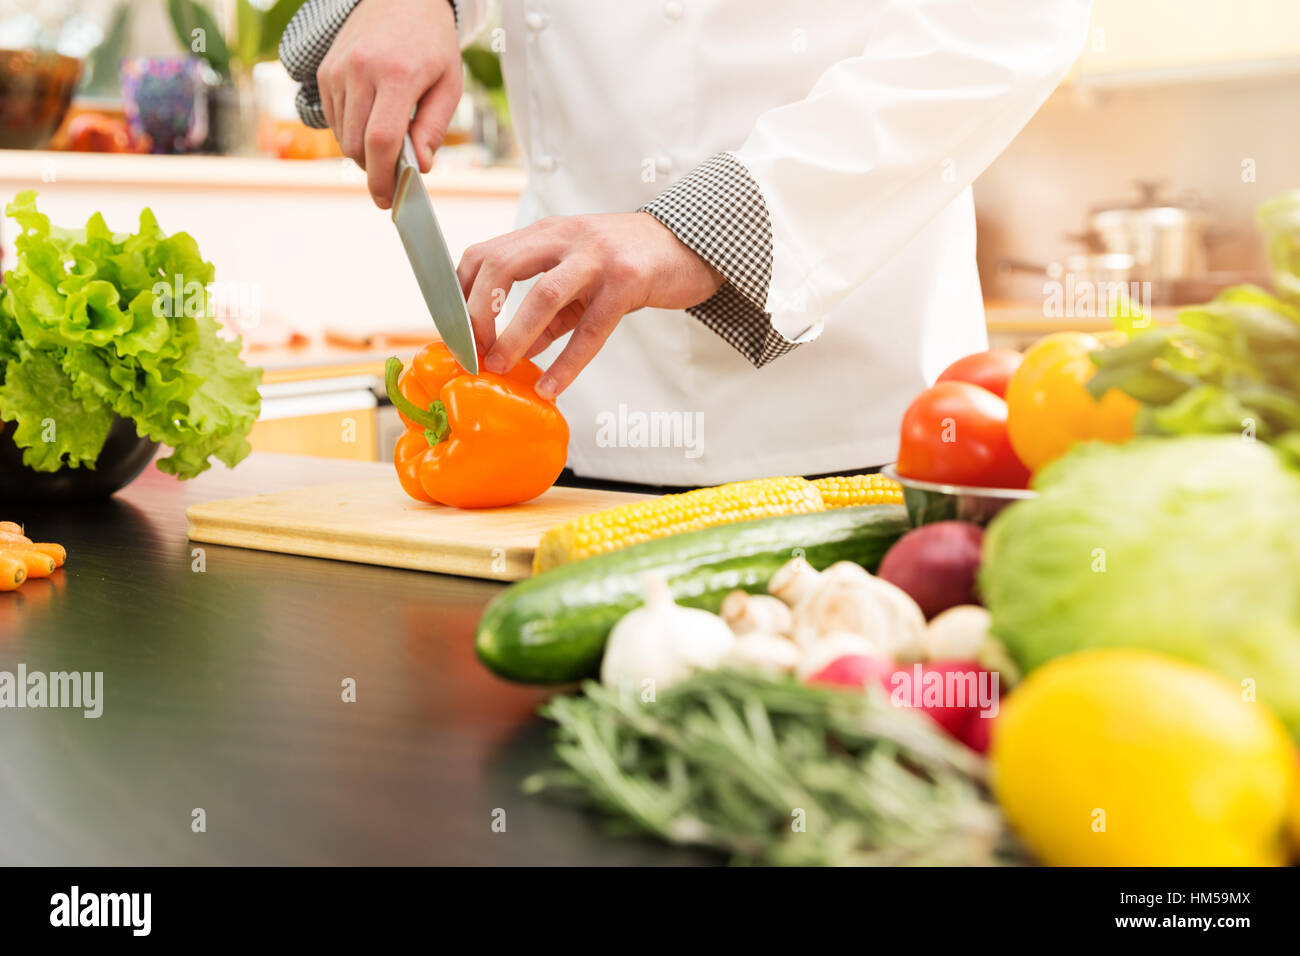 Cocinar la preparación de ensalada de verduras en la cocina doméstica Foto de stock